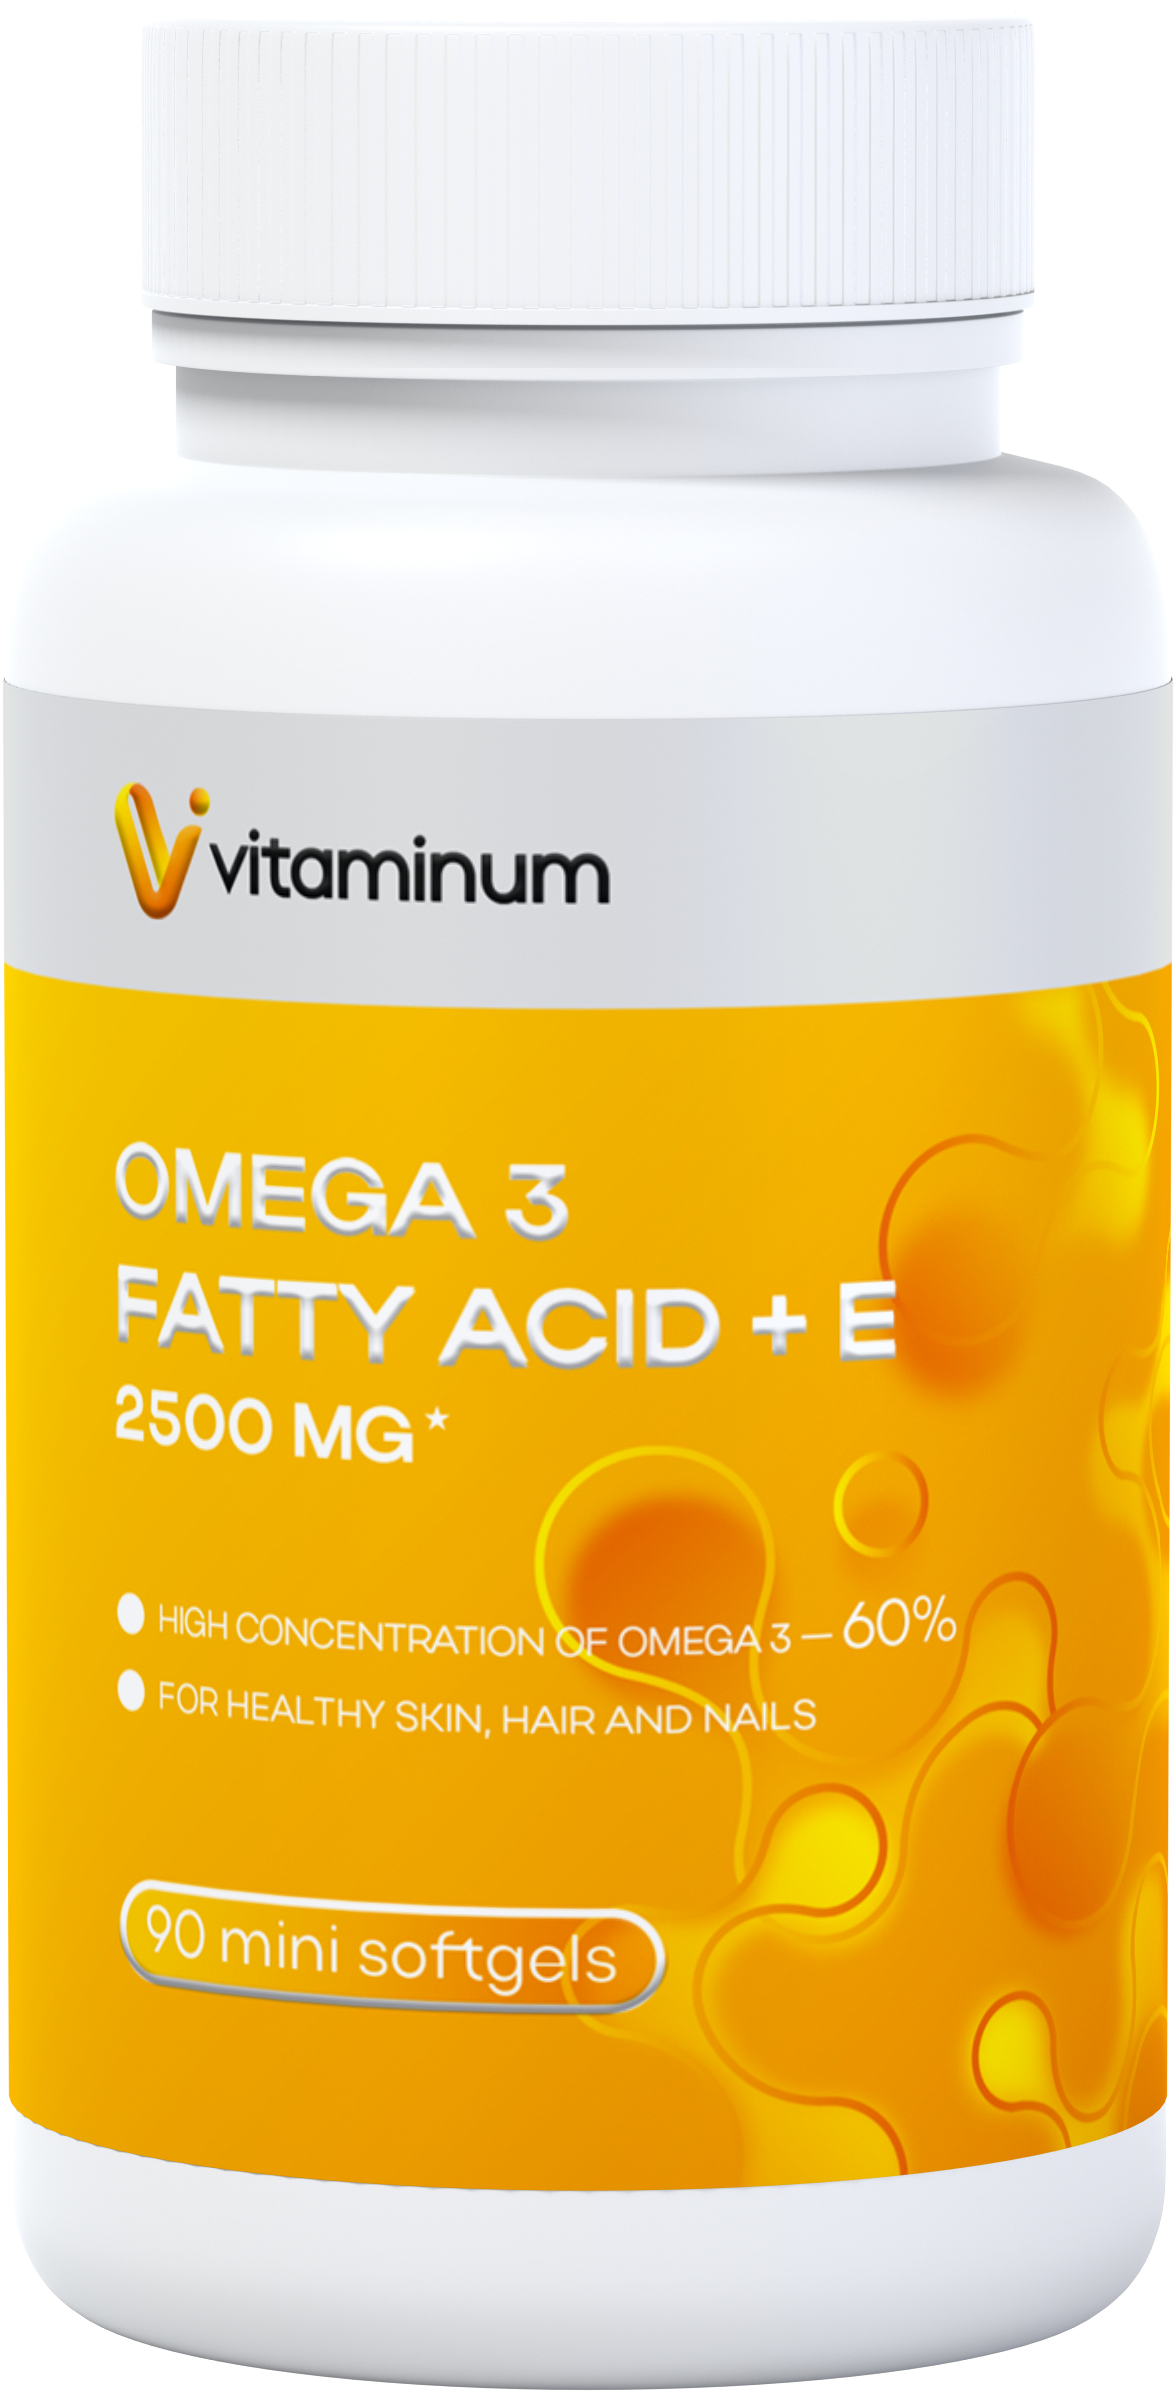  Vitaminum ОМЕГА 3 60% + витамин Е (2500 MG*) 90 капсул 700 мг   в Оленегорске